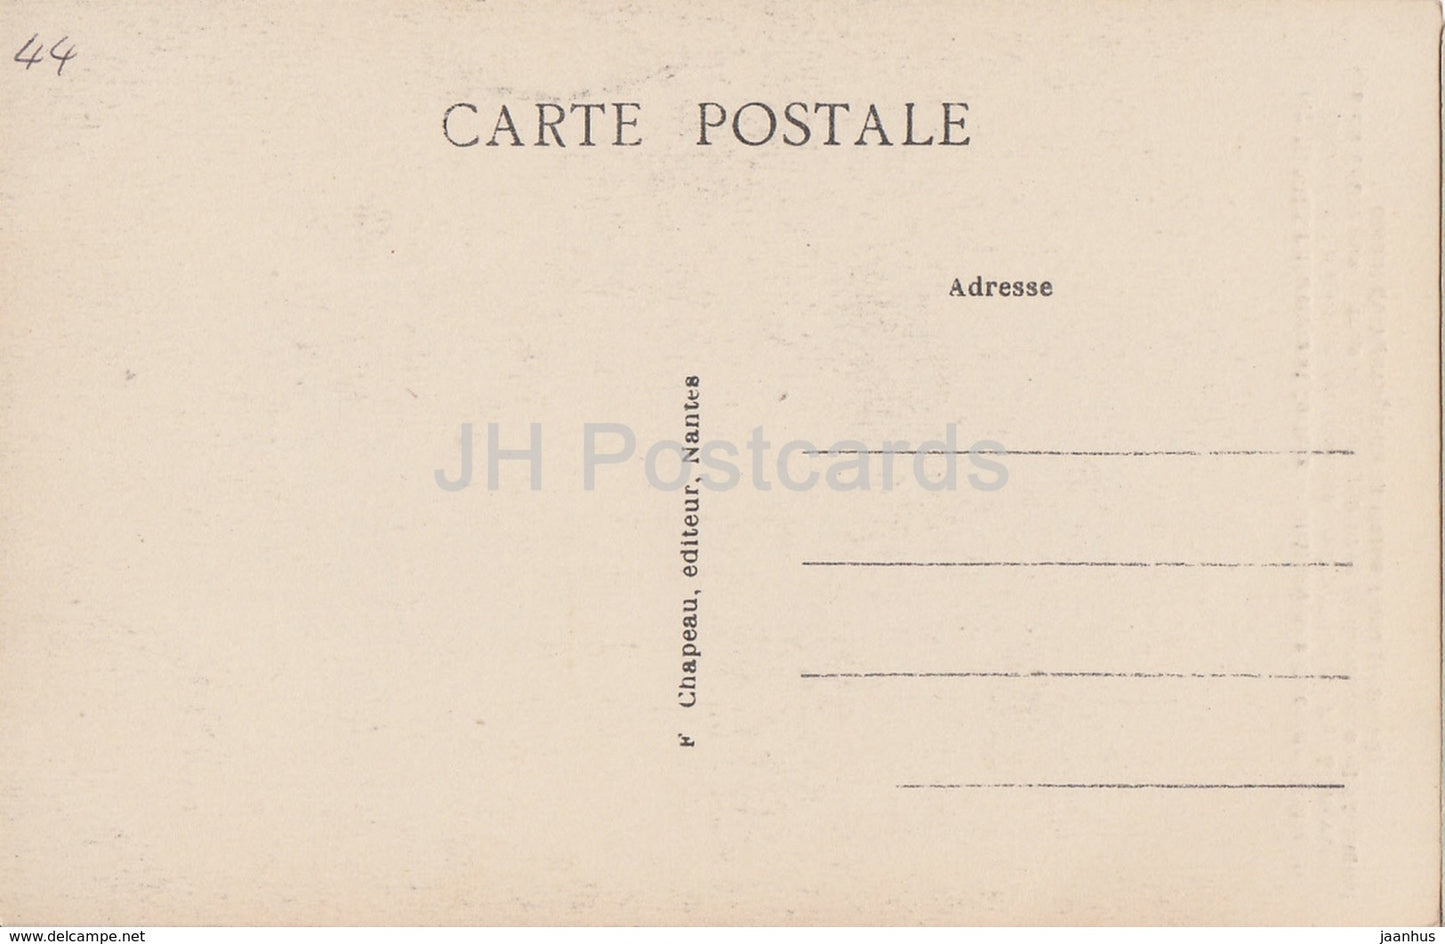 Nantes - Pittoresque et Curieux - Chateau des Ducs de Bretagne - Schloss - 167 - alte Postkarte - Frankreich - unbenutzt